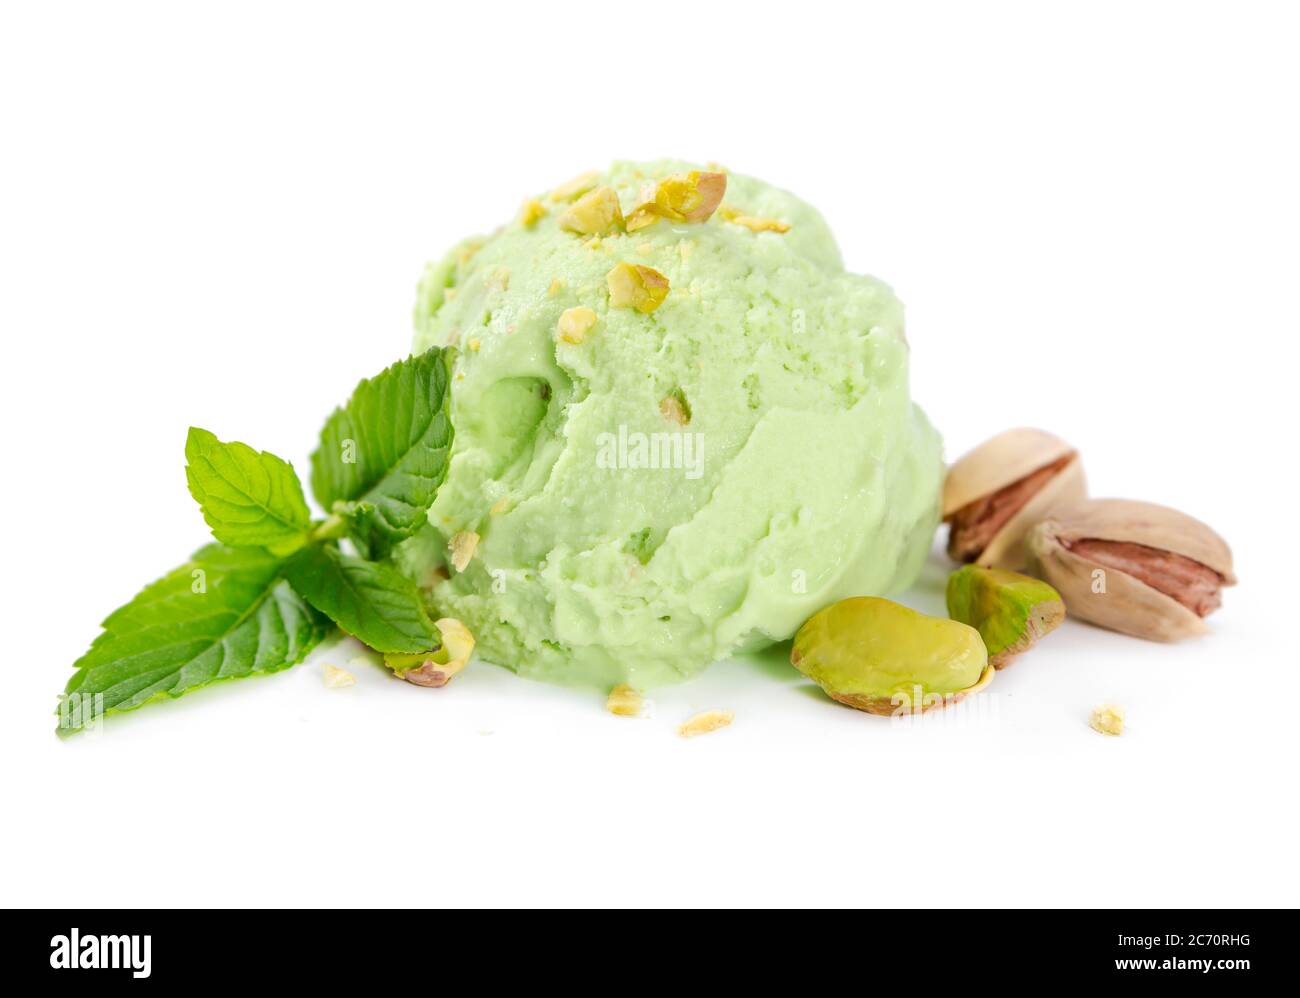 Una tazza di gelato al pistacchio con noci e menta isolati su sfondo bianco Foto Stock